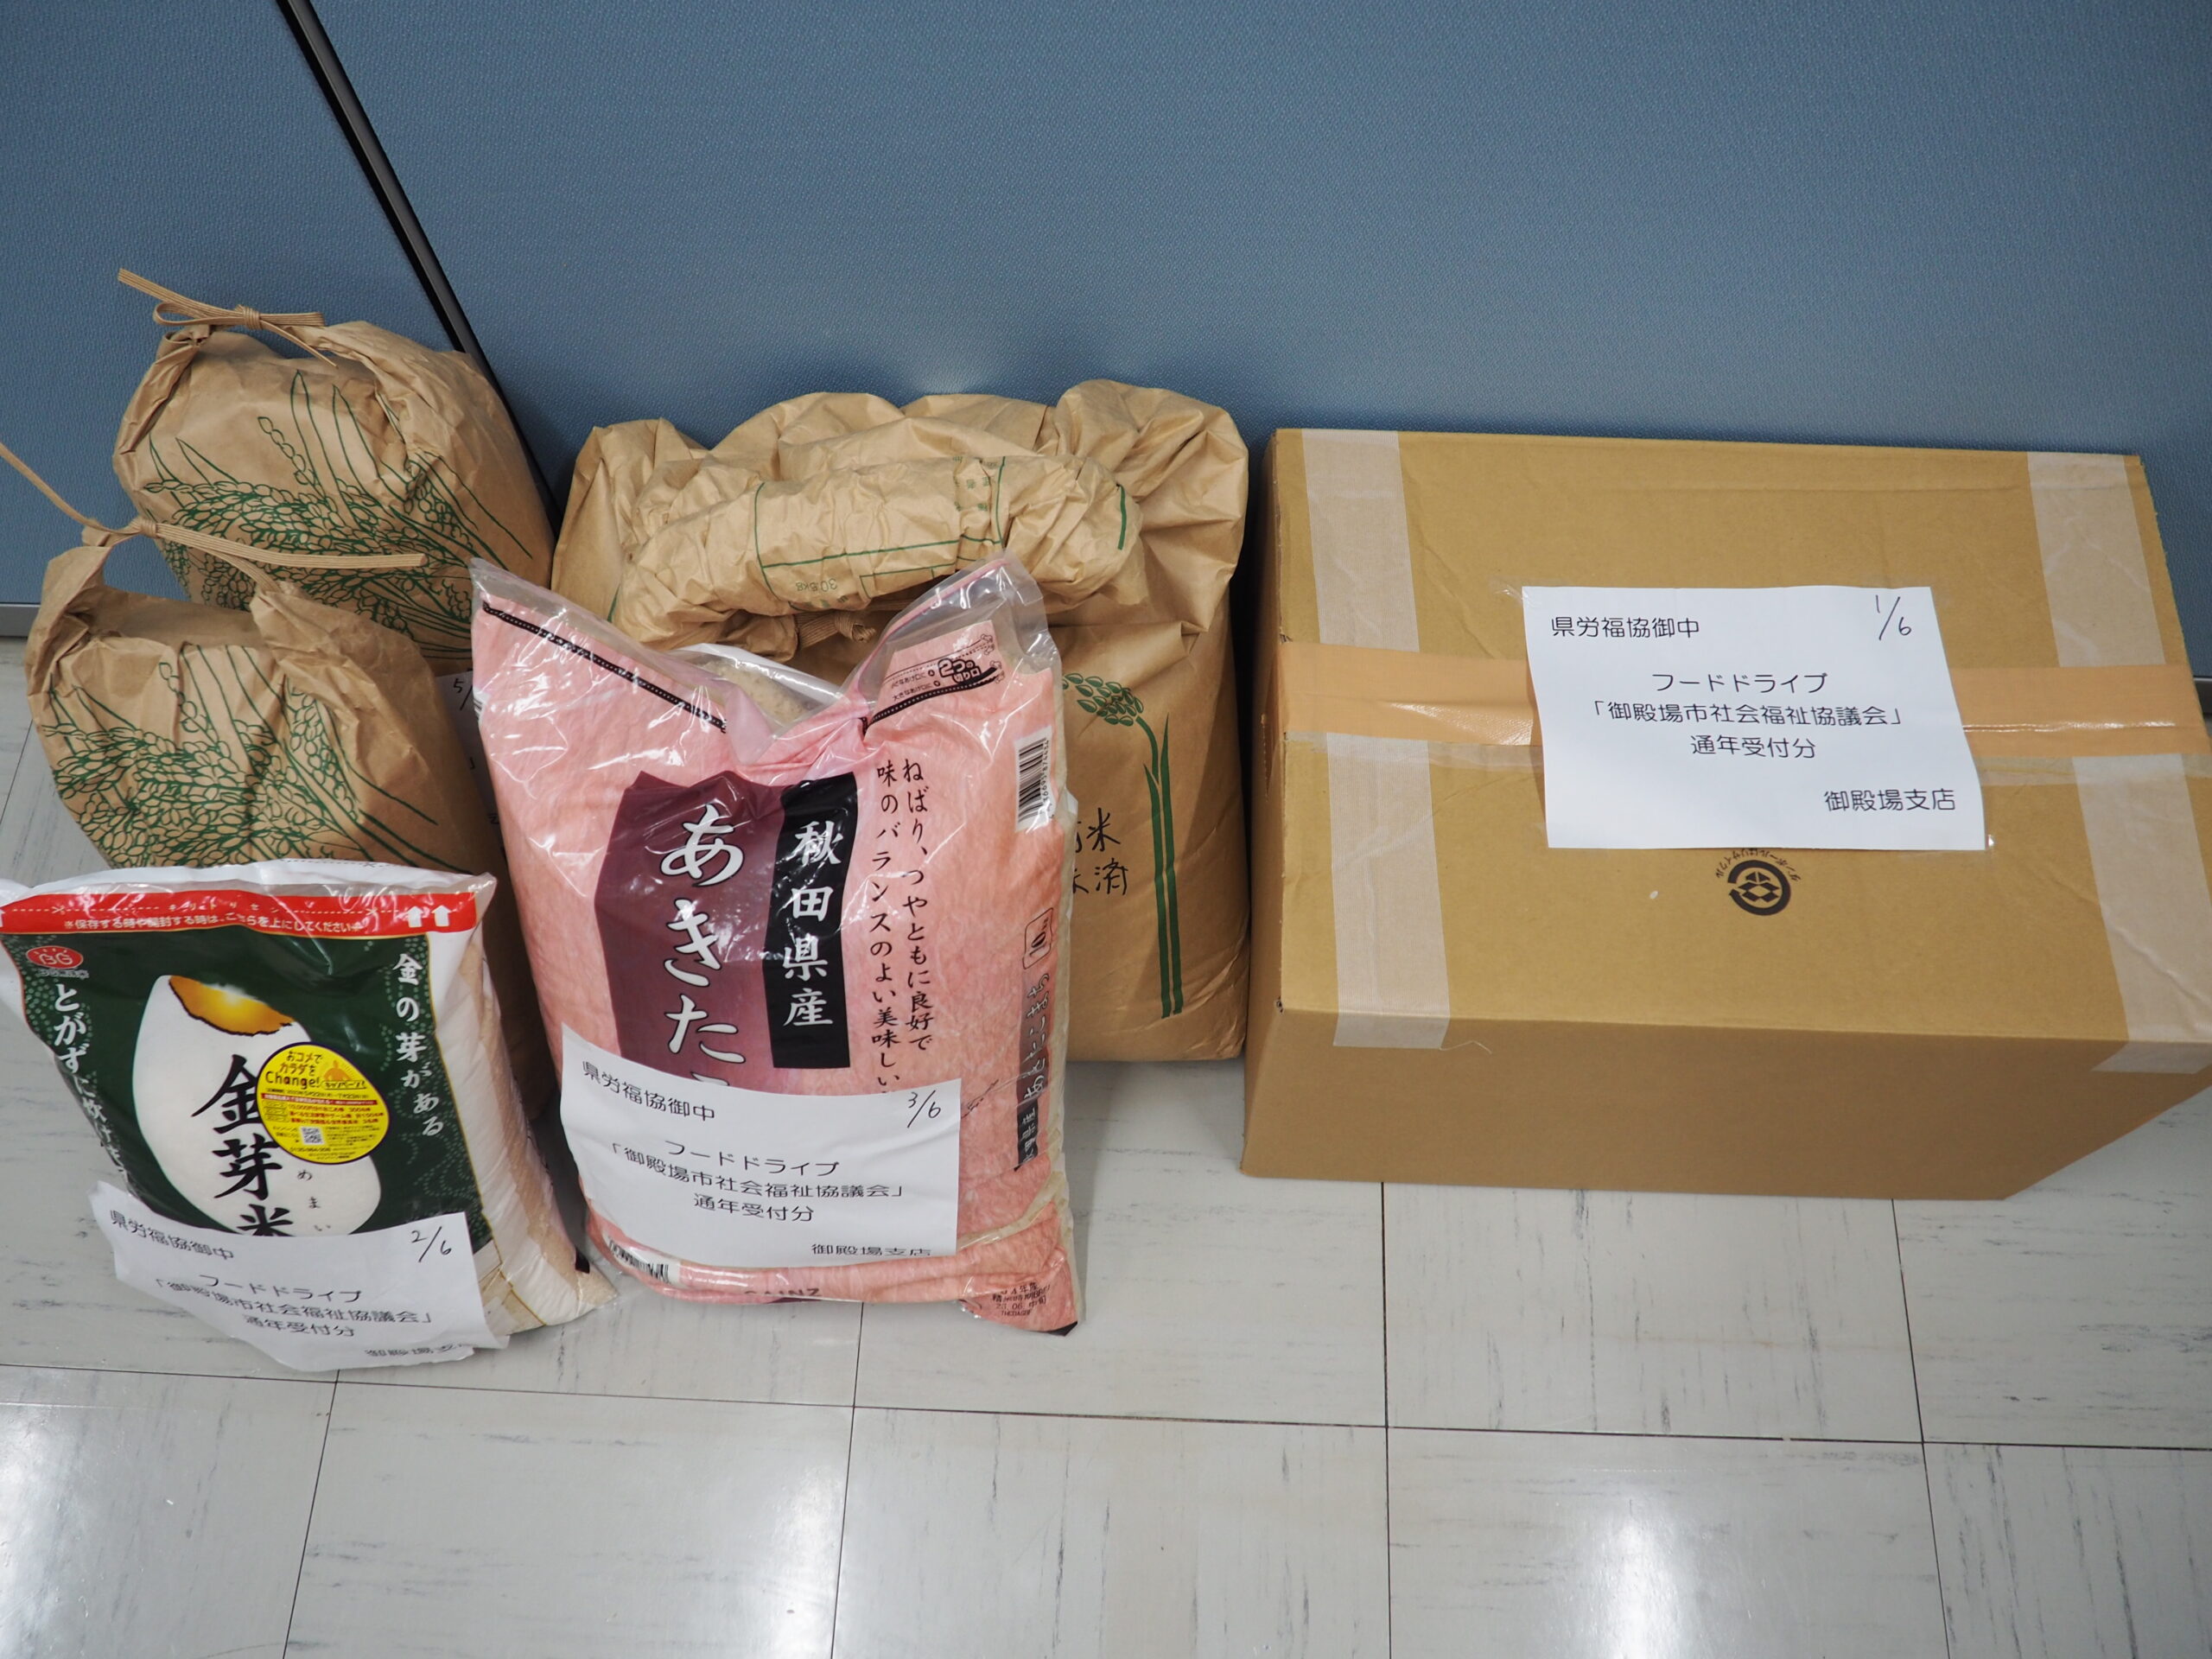 御殿場市社会福祉協議会様・三島地区労働者福祉協議会様から食品を提供いただきました。